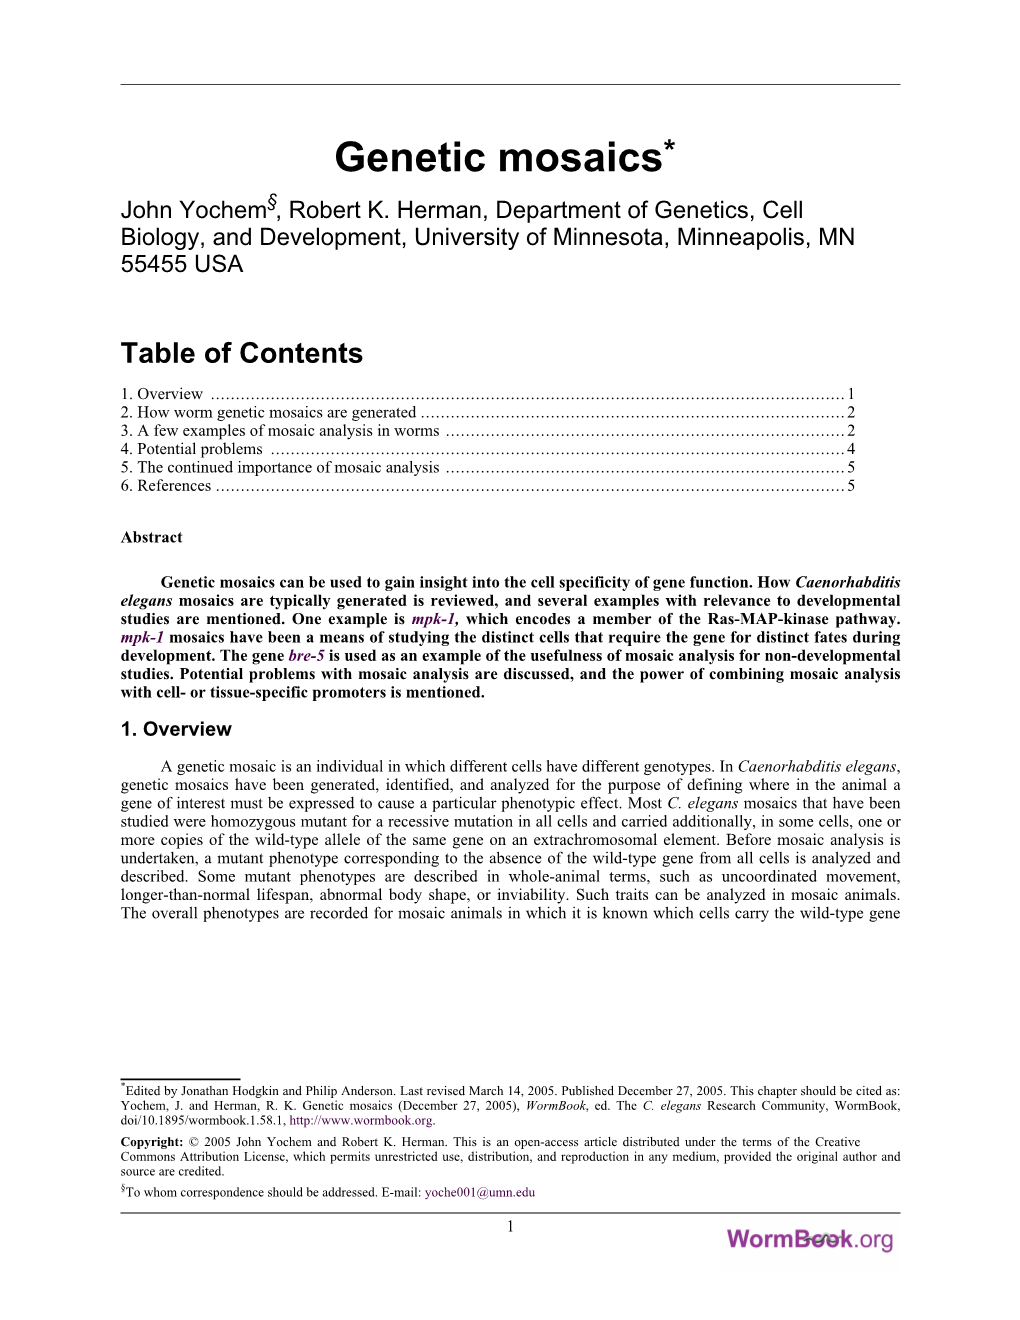 Genetic Mosaics* §